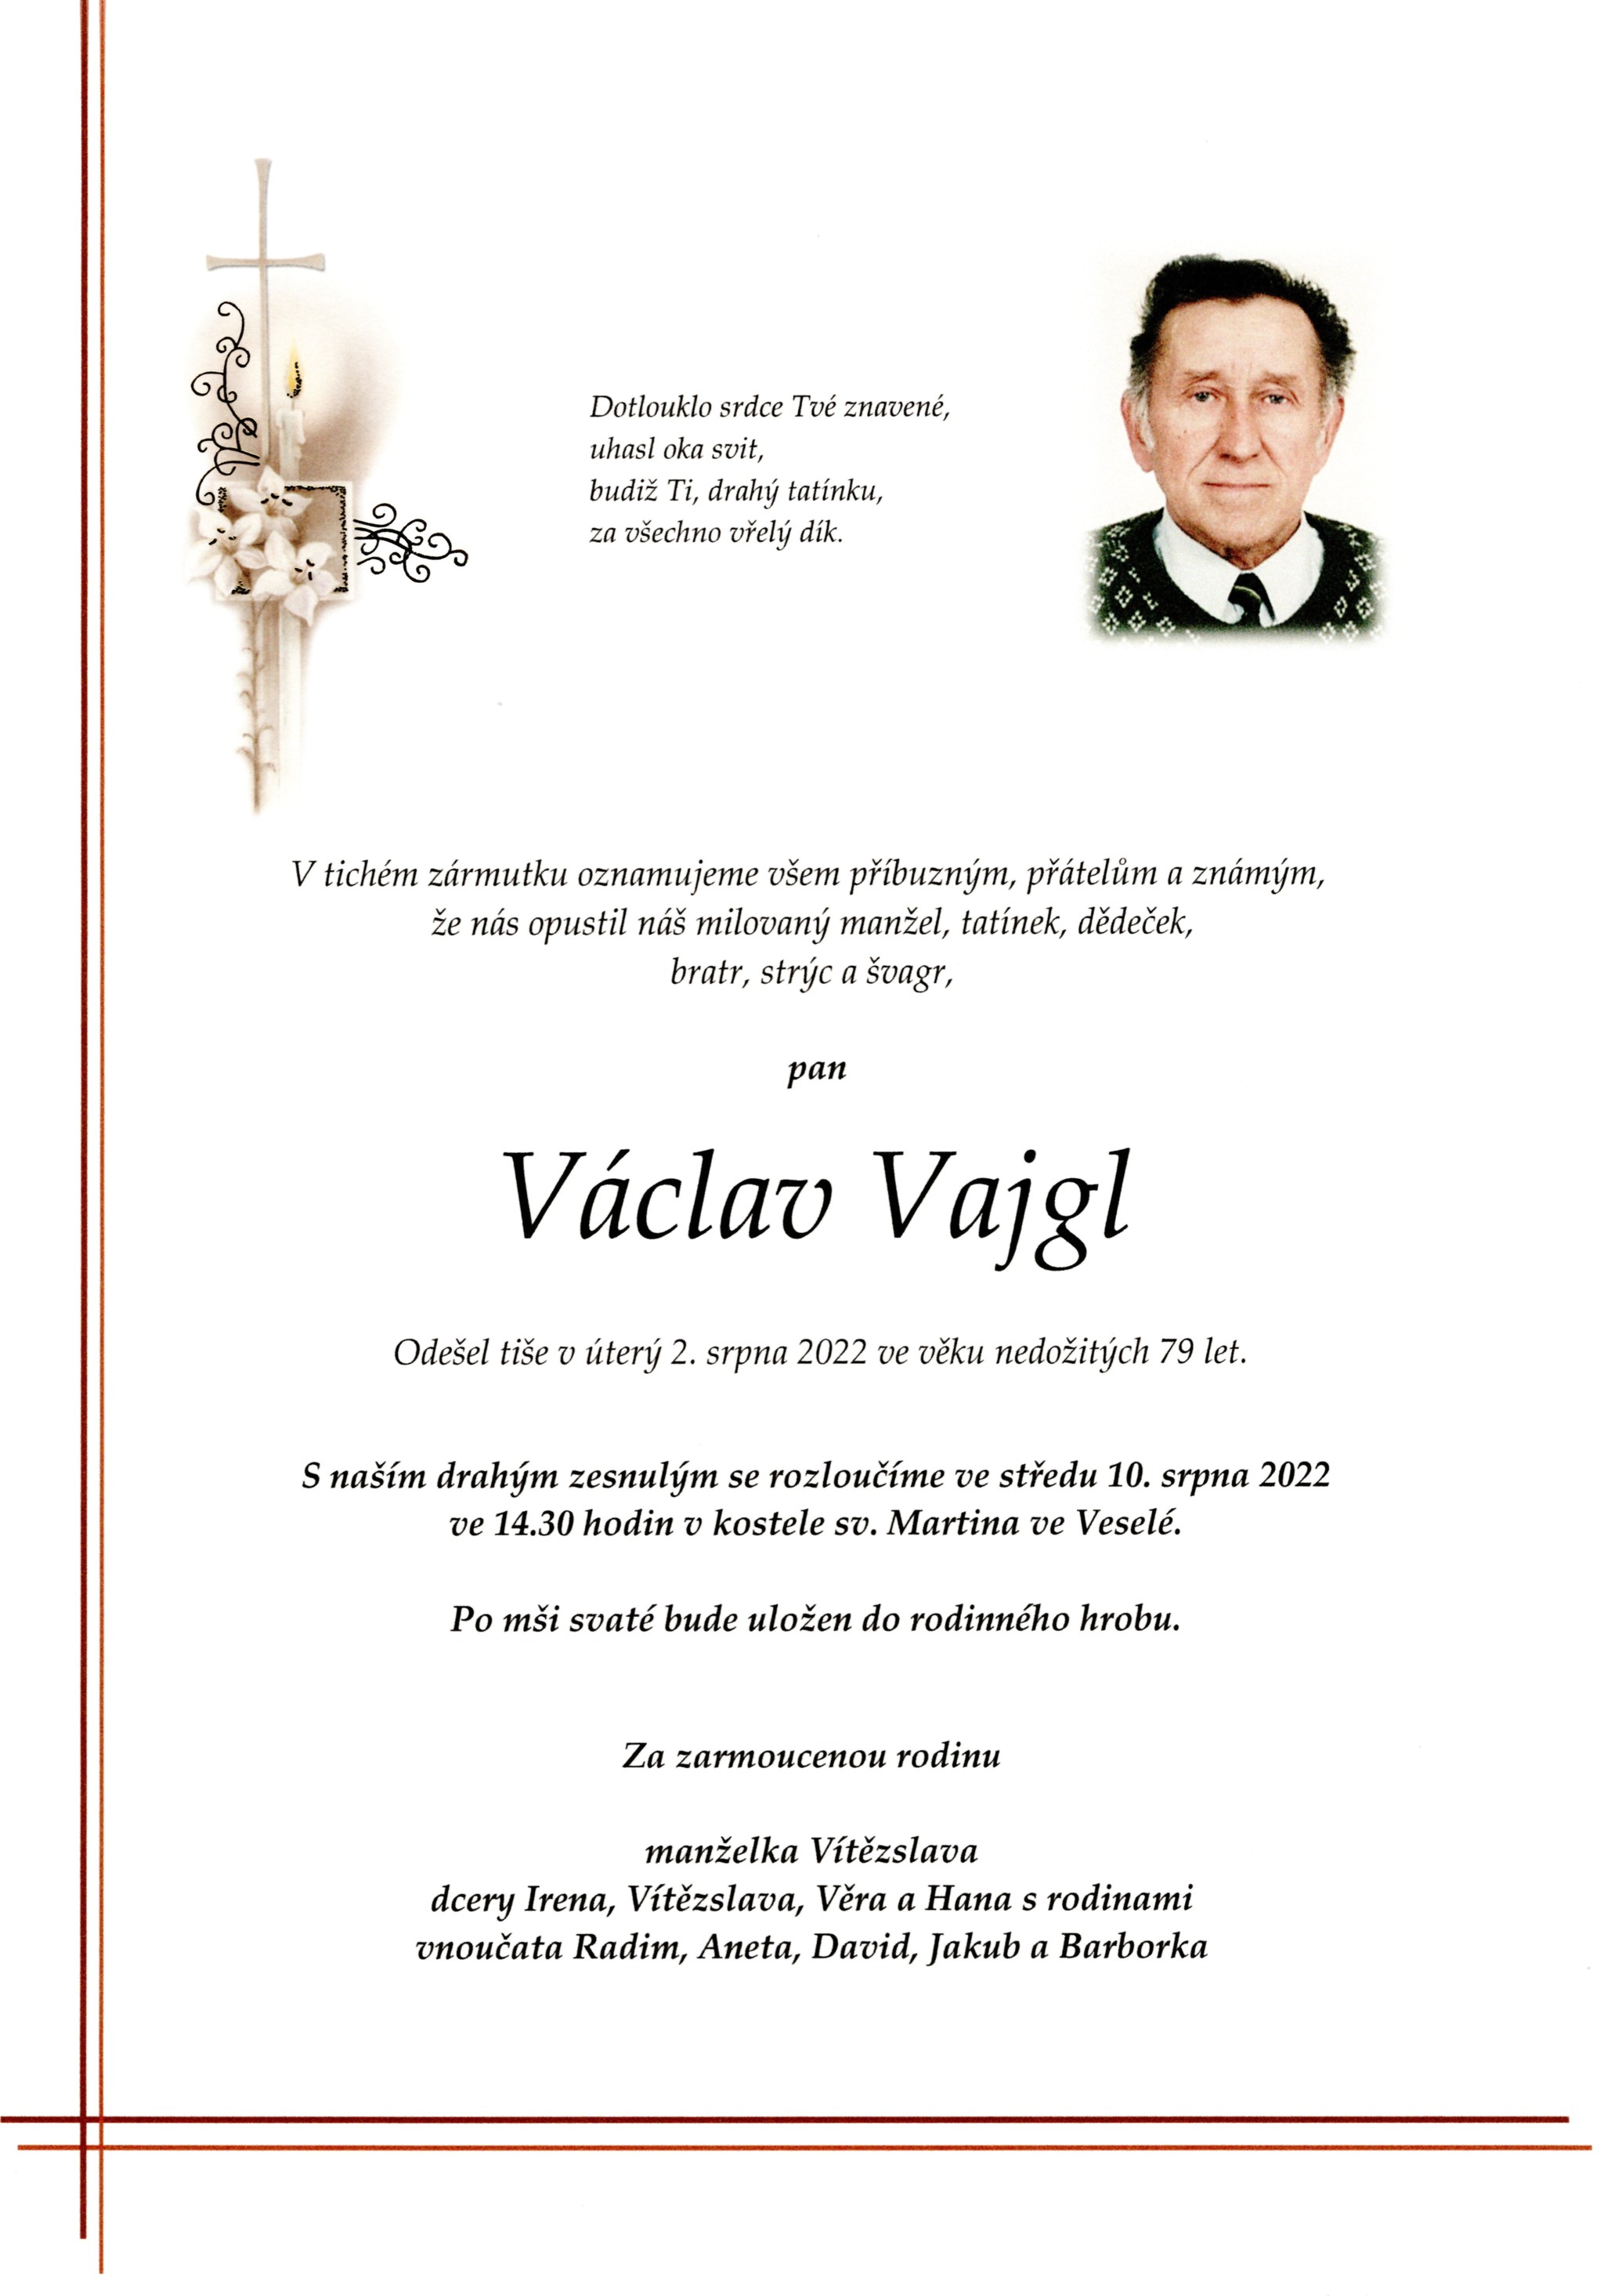 Václav Vajgl